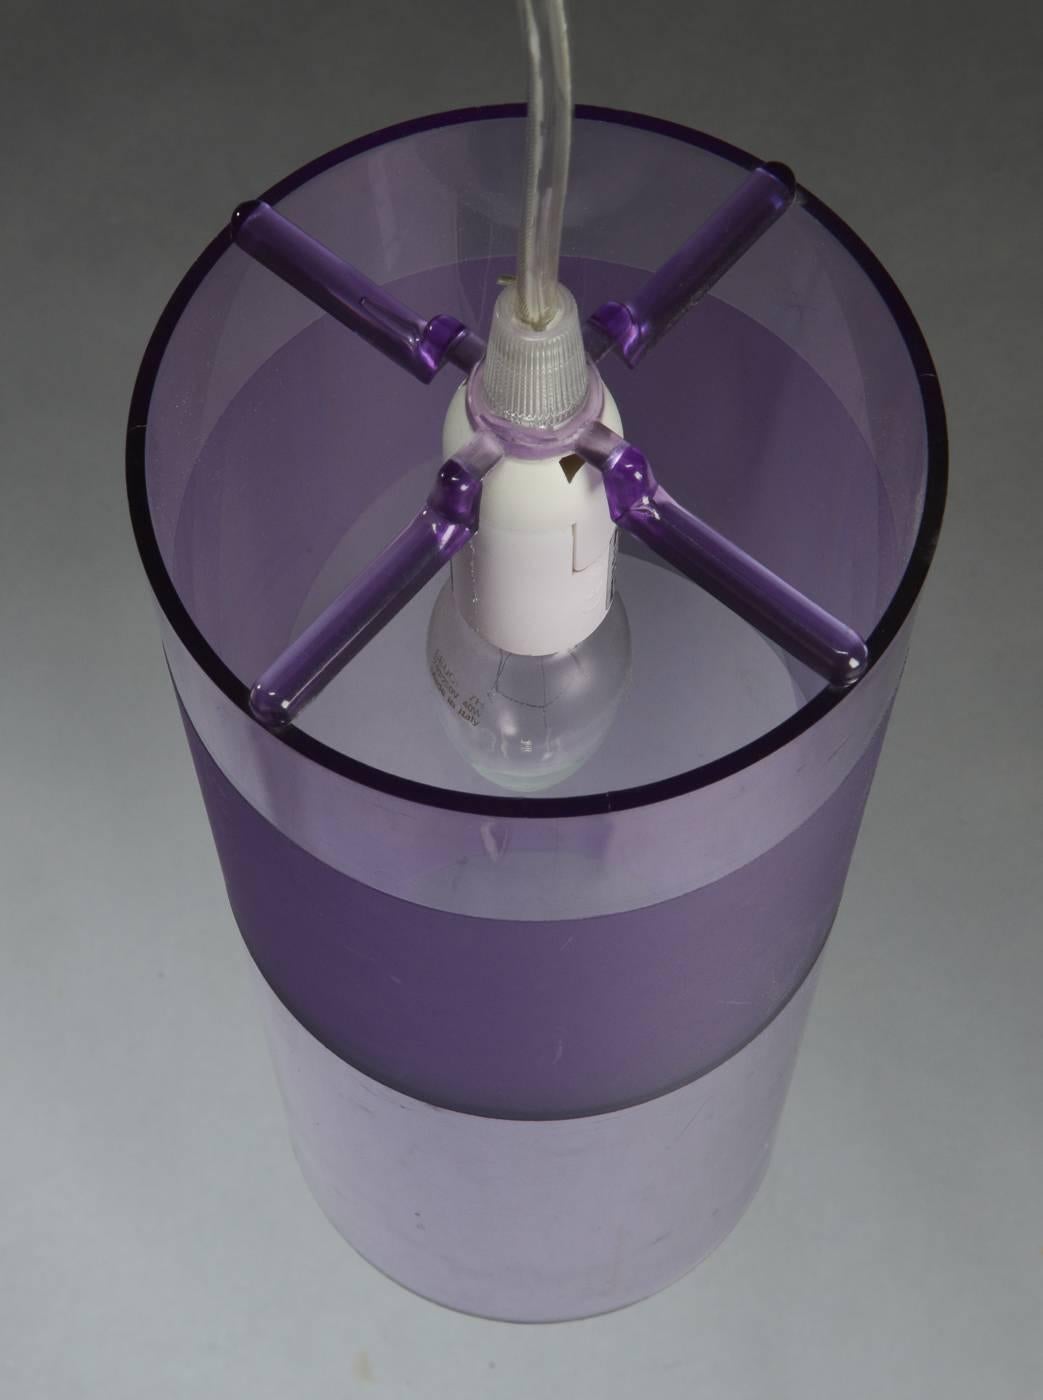 Easy est une lampe à suspension cylindrique qui enchante et excite par ses jeux de couleurs et de lumière. Une fois allumé, le polycarbonate est mis en valeur par une myriade de reflets.
3 pièces disponibles